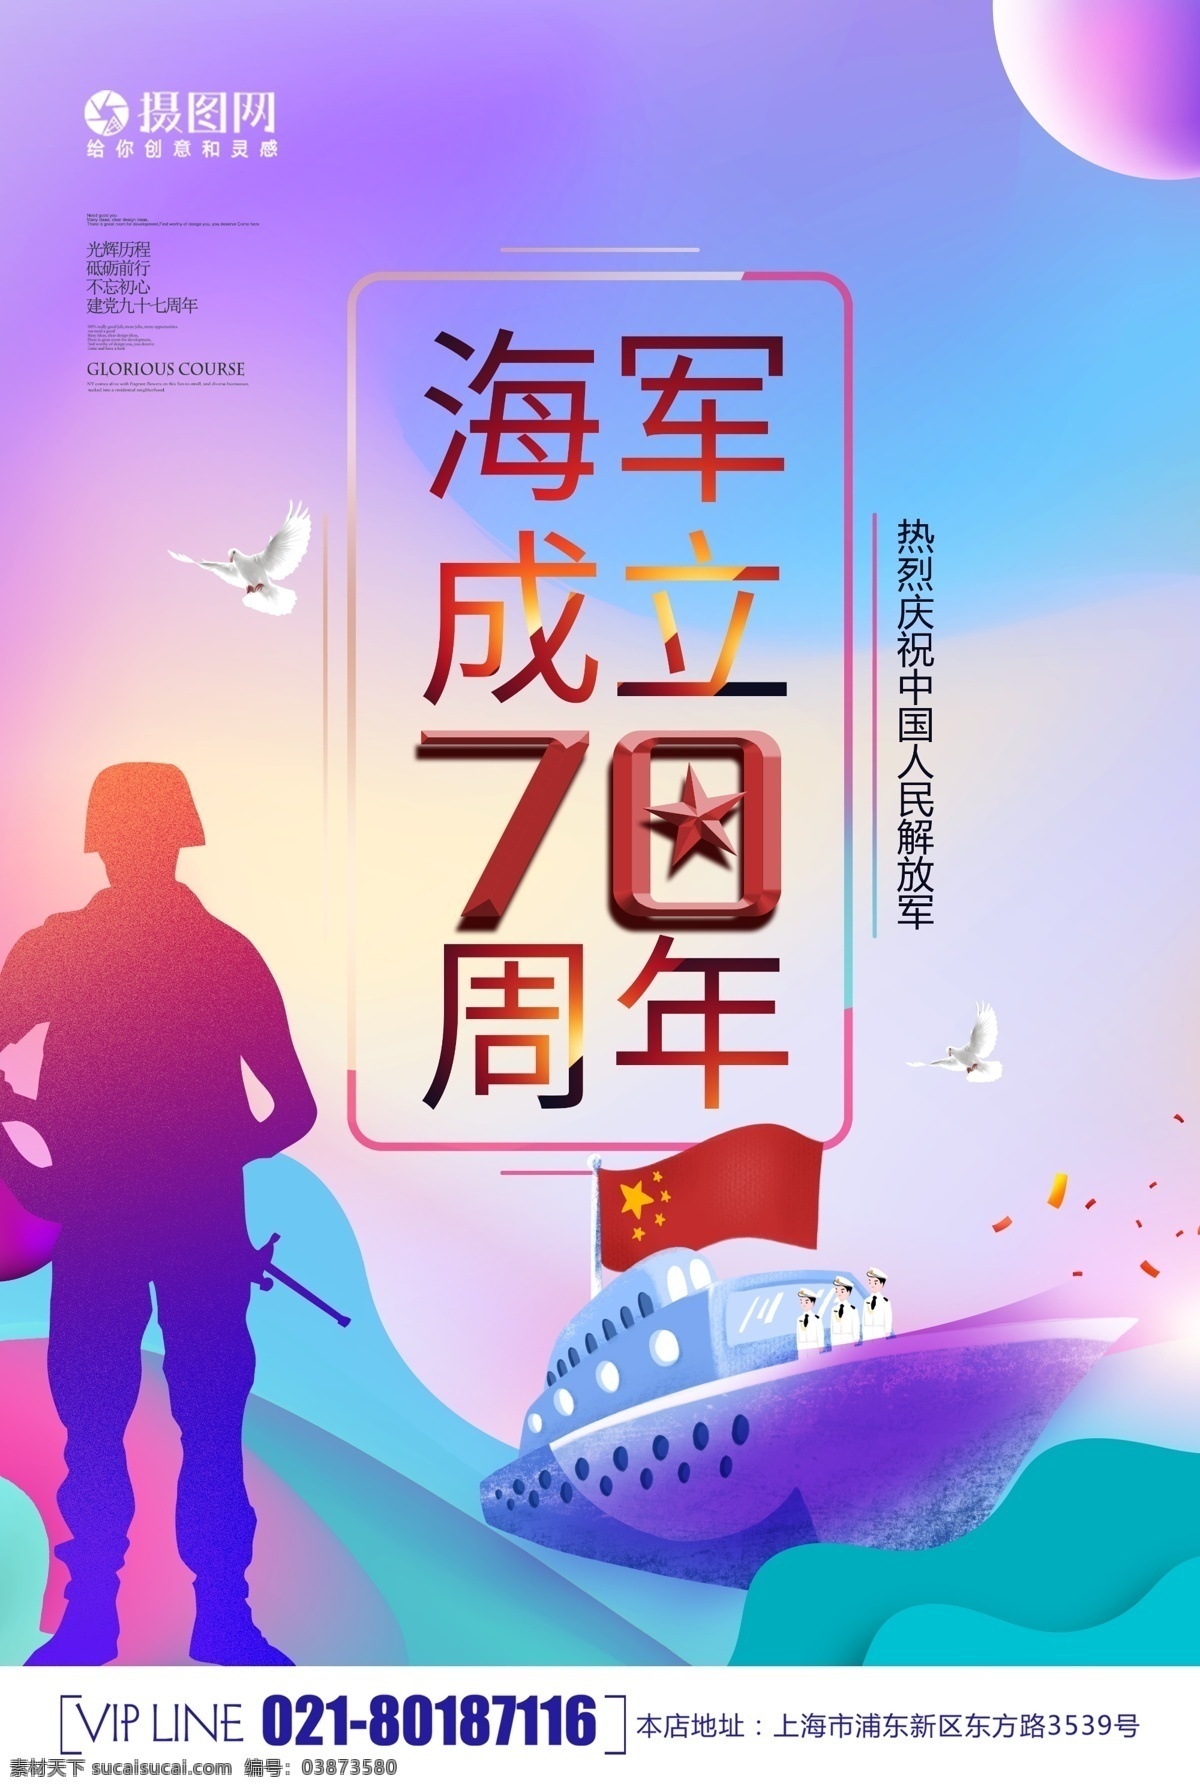 海军 成立 周年 海报 军事 70周年 军舰 军人 海岛 海 大海 海边 中国 国旗 轮船